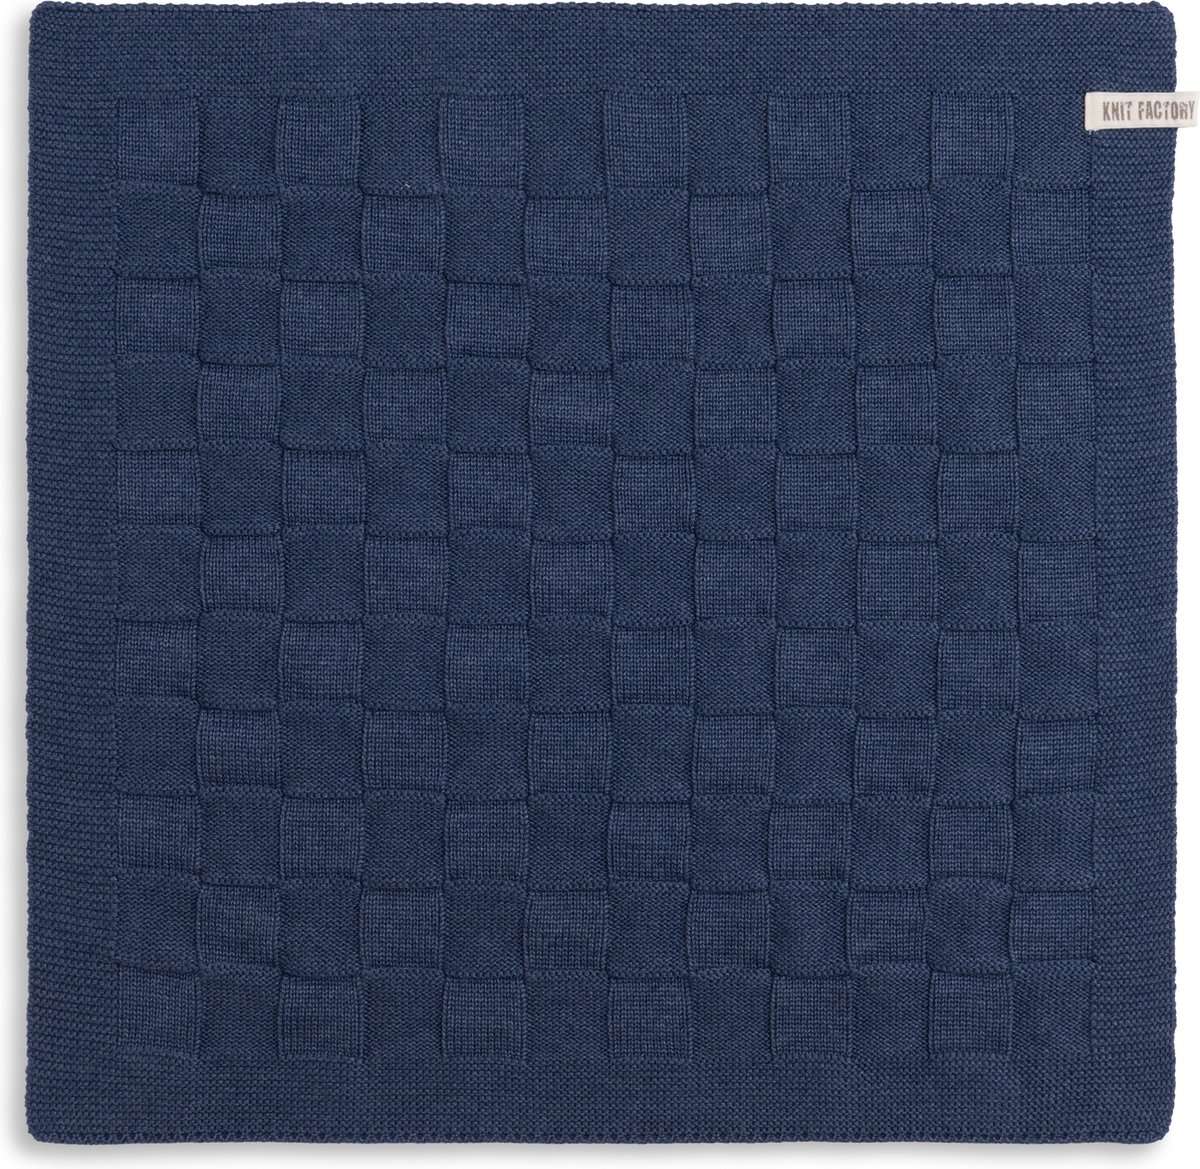 Knit Factory Gebreide Keukendoek - Keukenhanddoek Uni - Handdoek - Vaatdoek - Keuken doek - Jeans - Donkerblauw - 50x50 cm